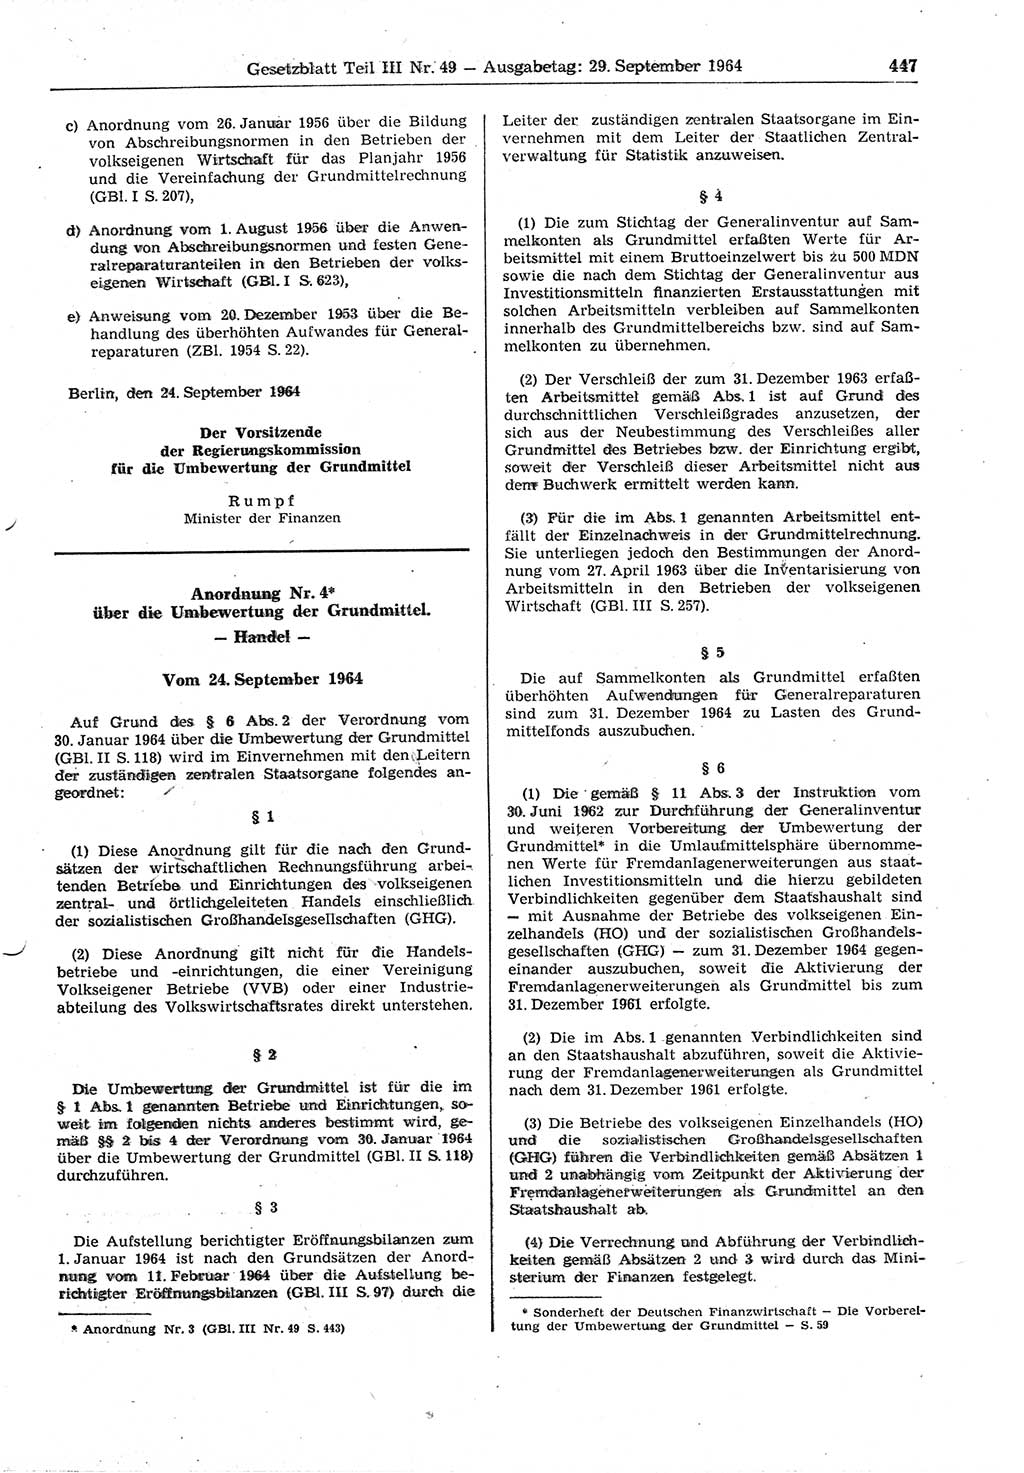 Gesetzblatt (GBl.) der Deutschen Demokratischen Republik (DDR) Teil ⅠⅠⅠ 1964, Seite 447 (GBl. DDR ⅠⅠⅠ 1964, S. 447)